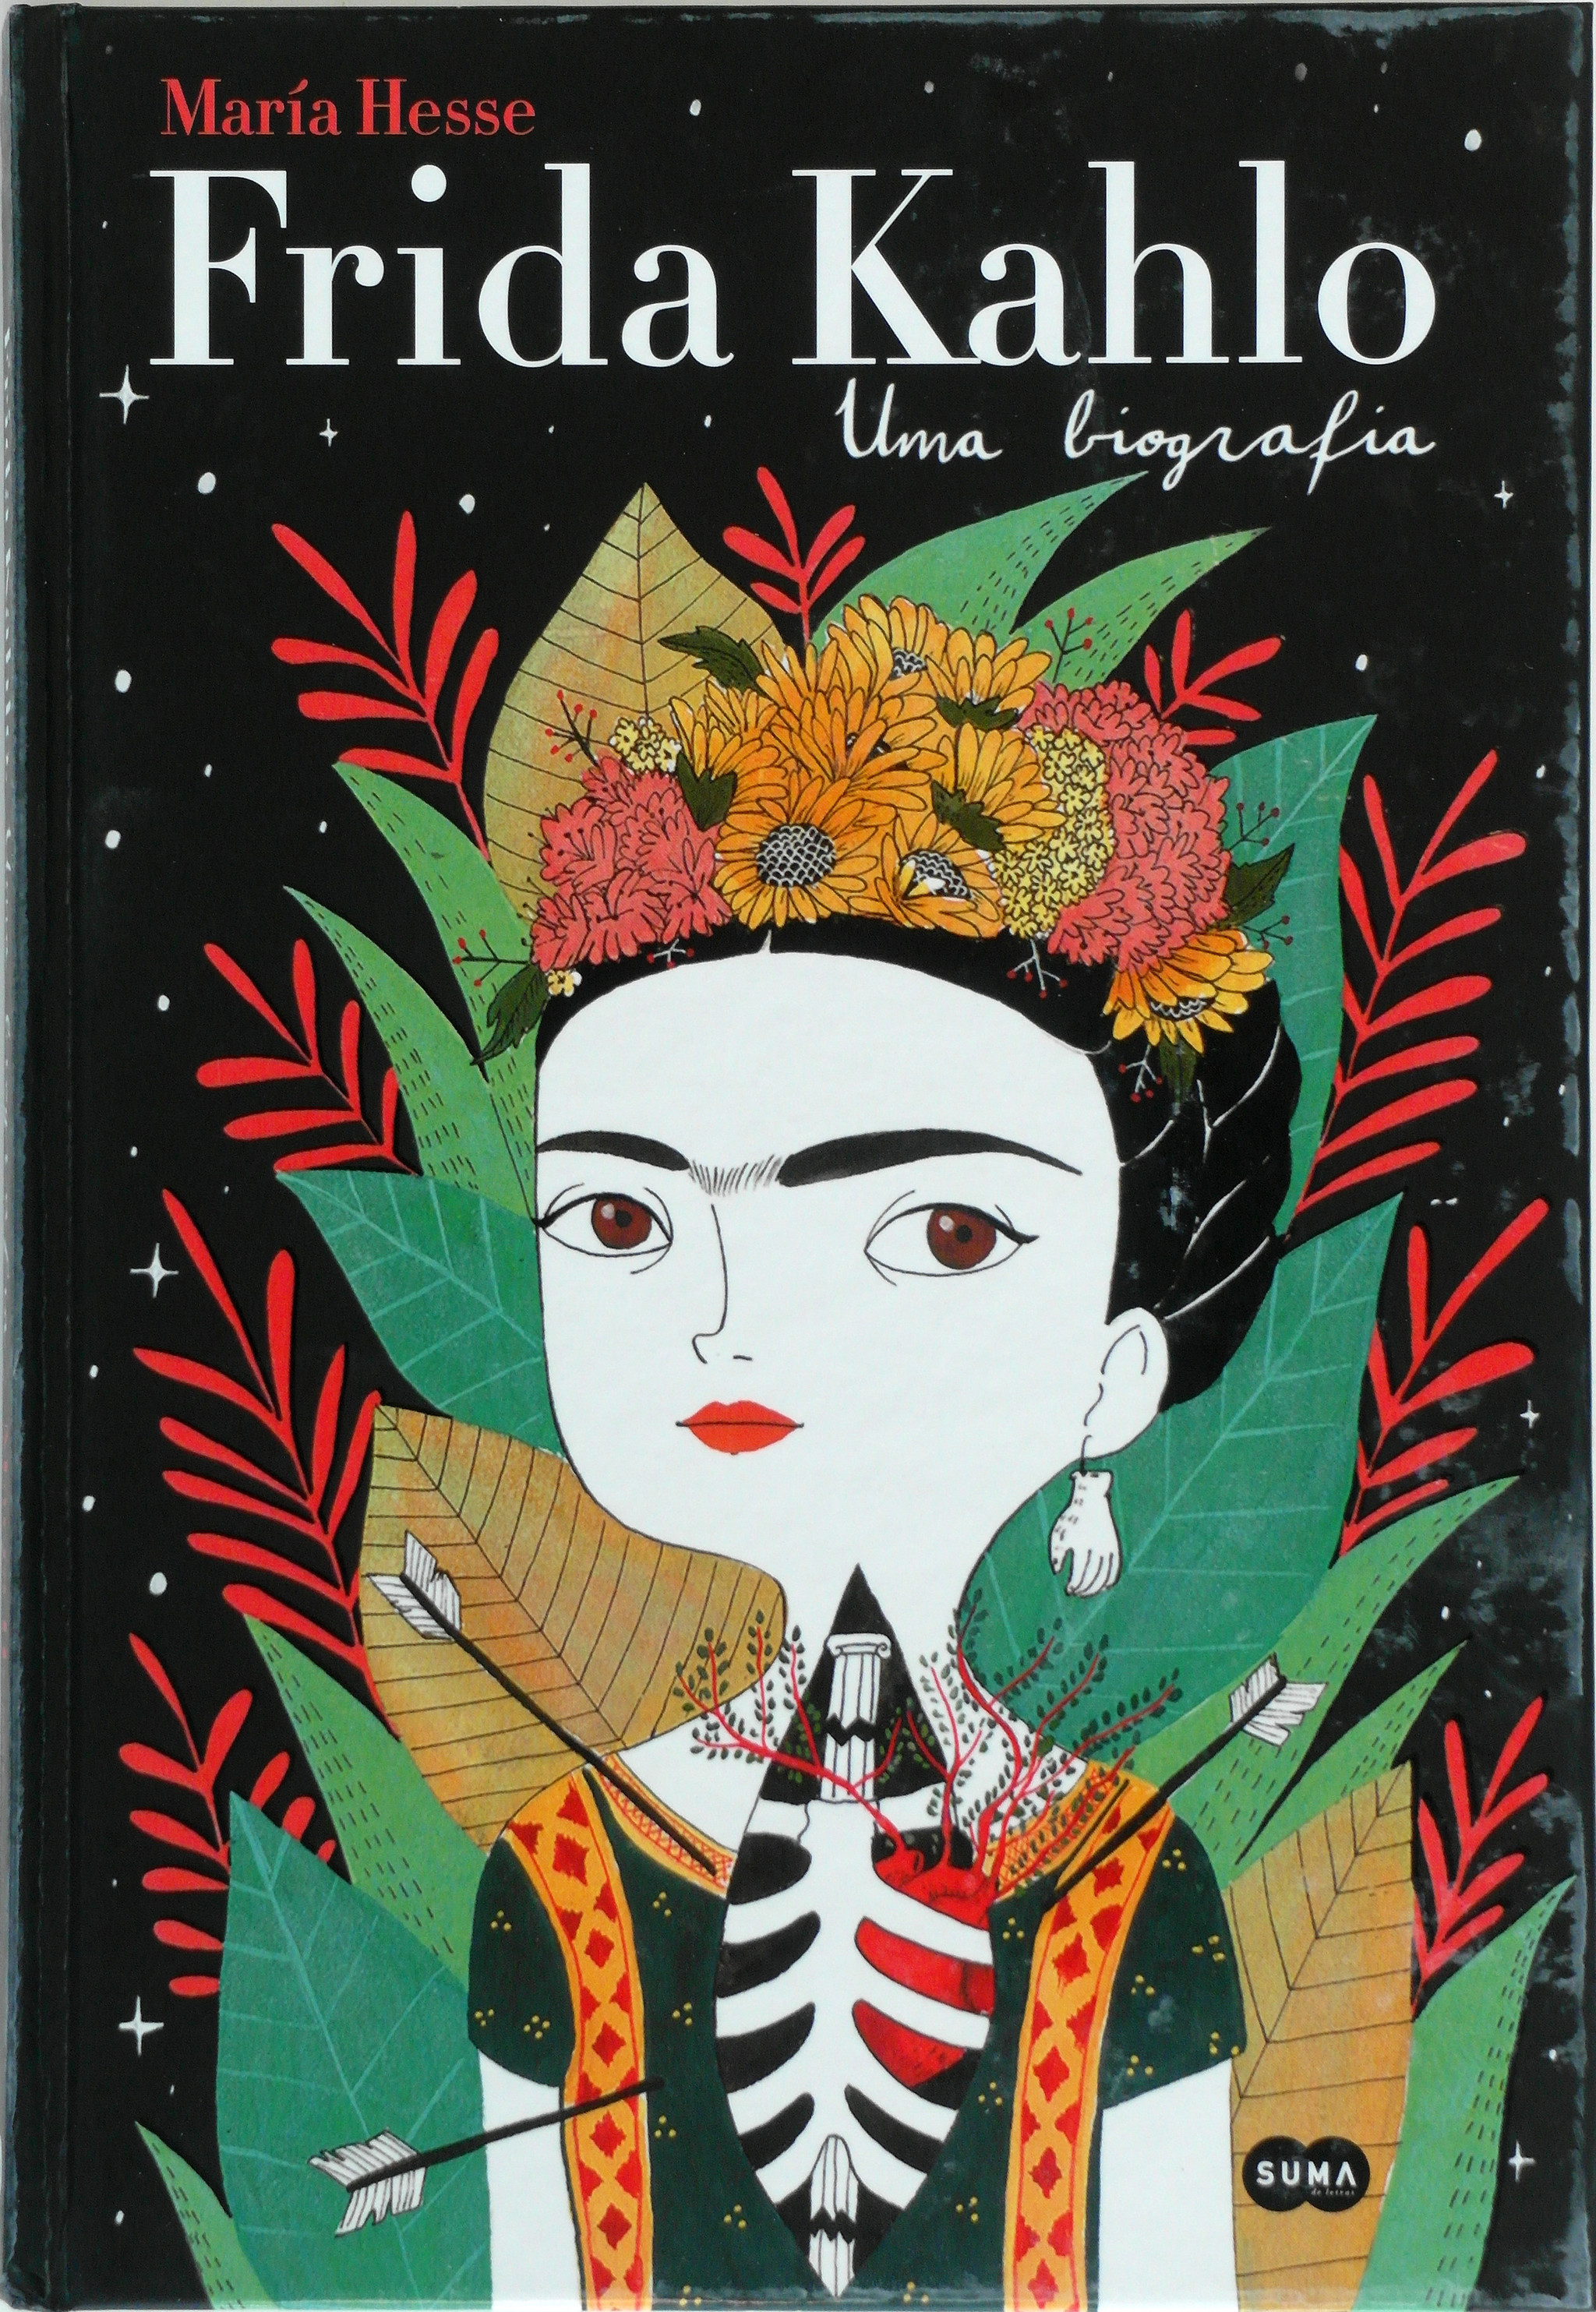 livro Frida Khalo 01.JPG